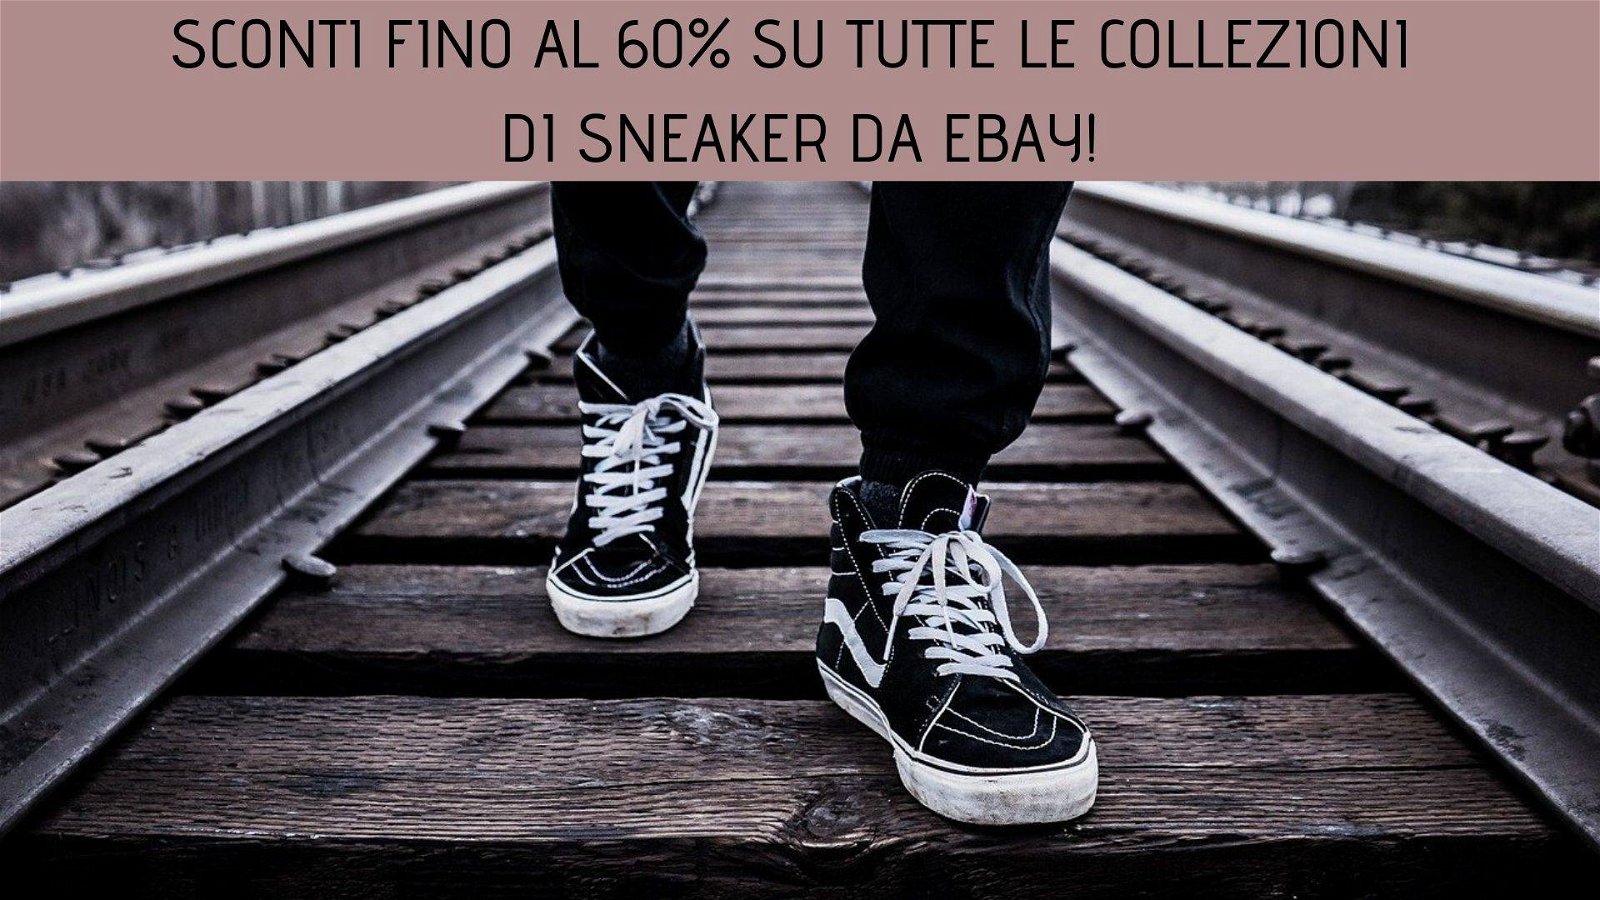 Immagine di Sconti fino al 60% su tutte le collezioni di sneaker da eBay